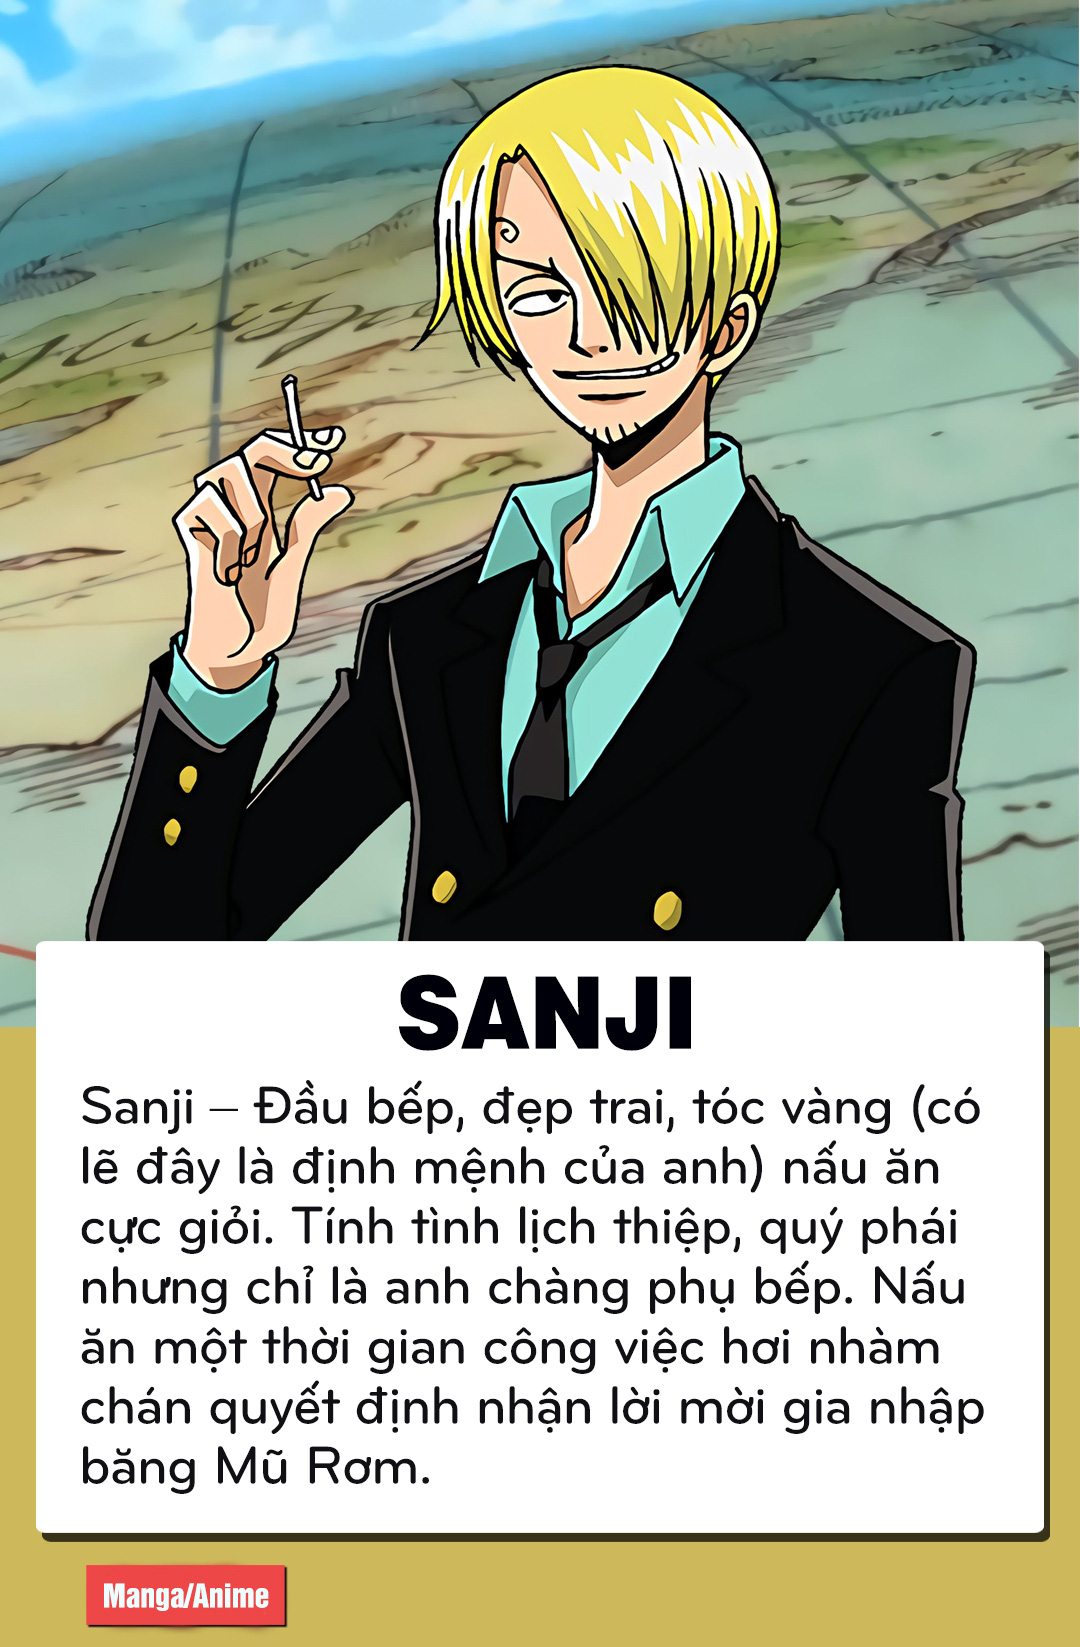 Mua Hình xăm chủ đề hoạt hình anime Đảo Hải Tặc One Piece Luffy Zoro  Sanji Xăm giống Inkaholic tại Quangyo